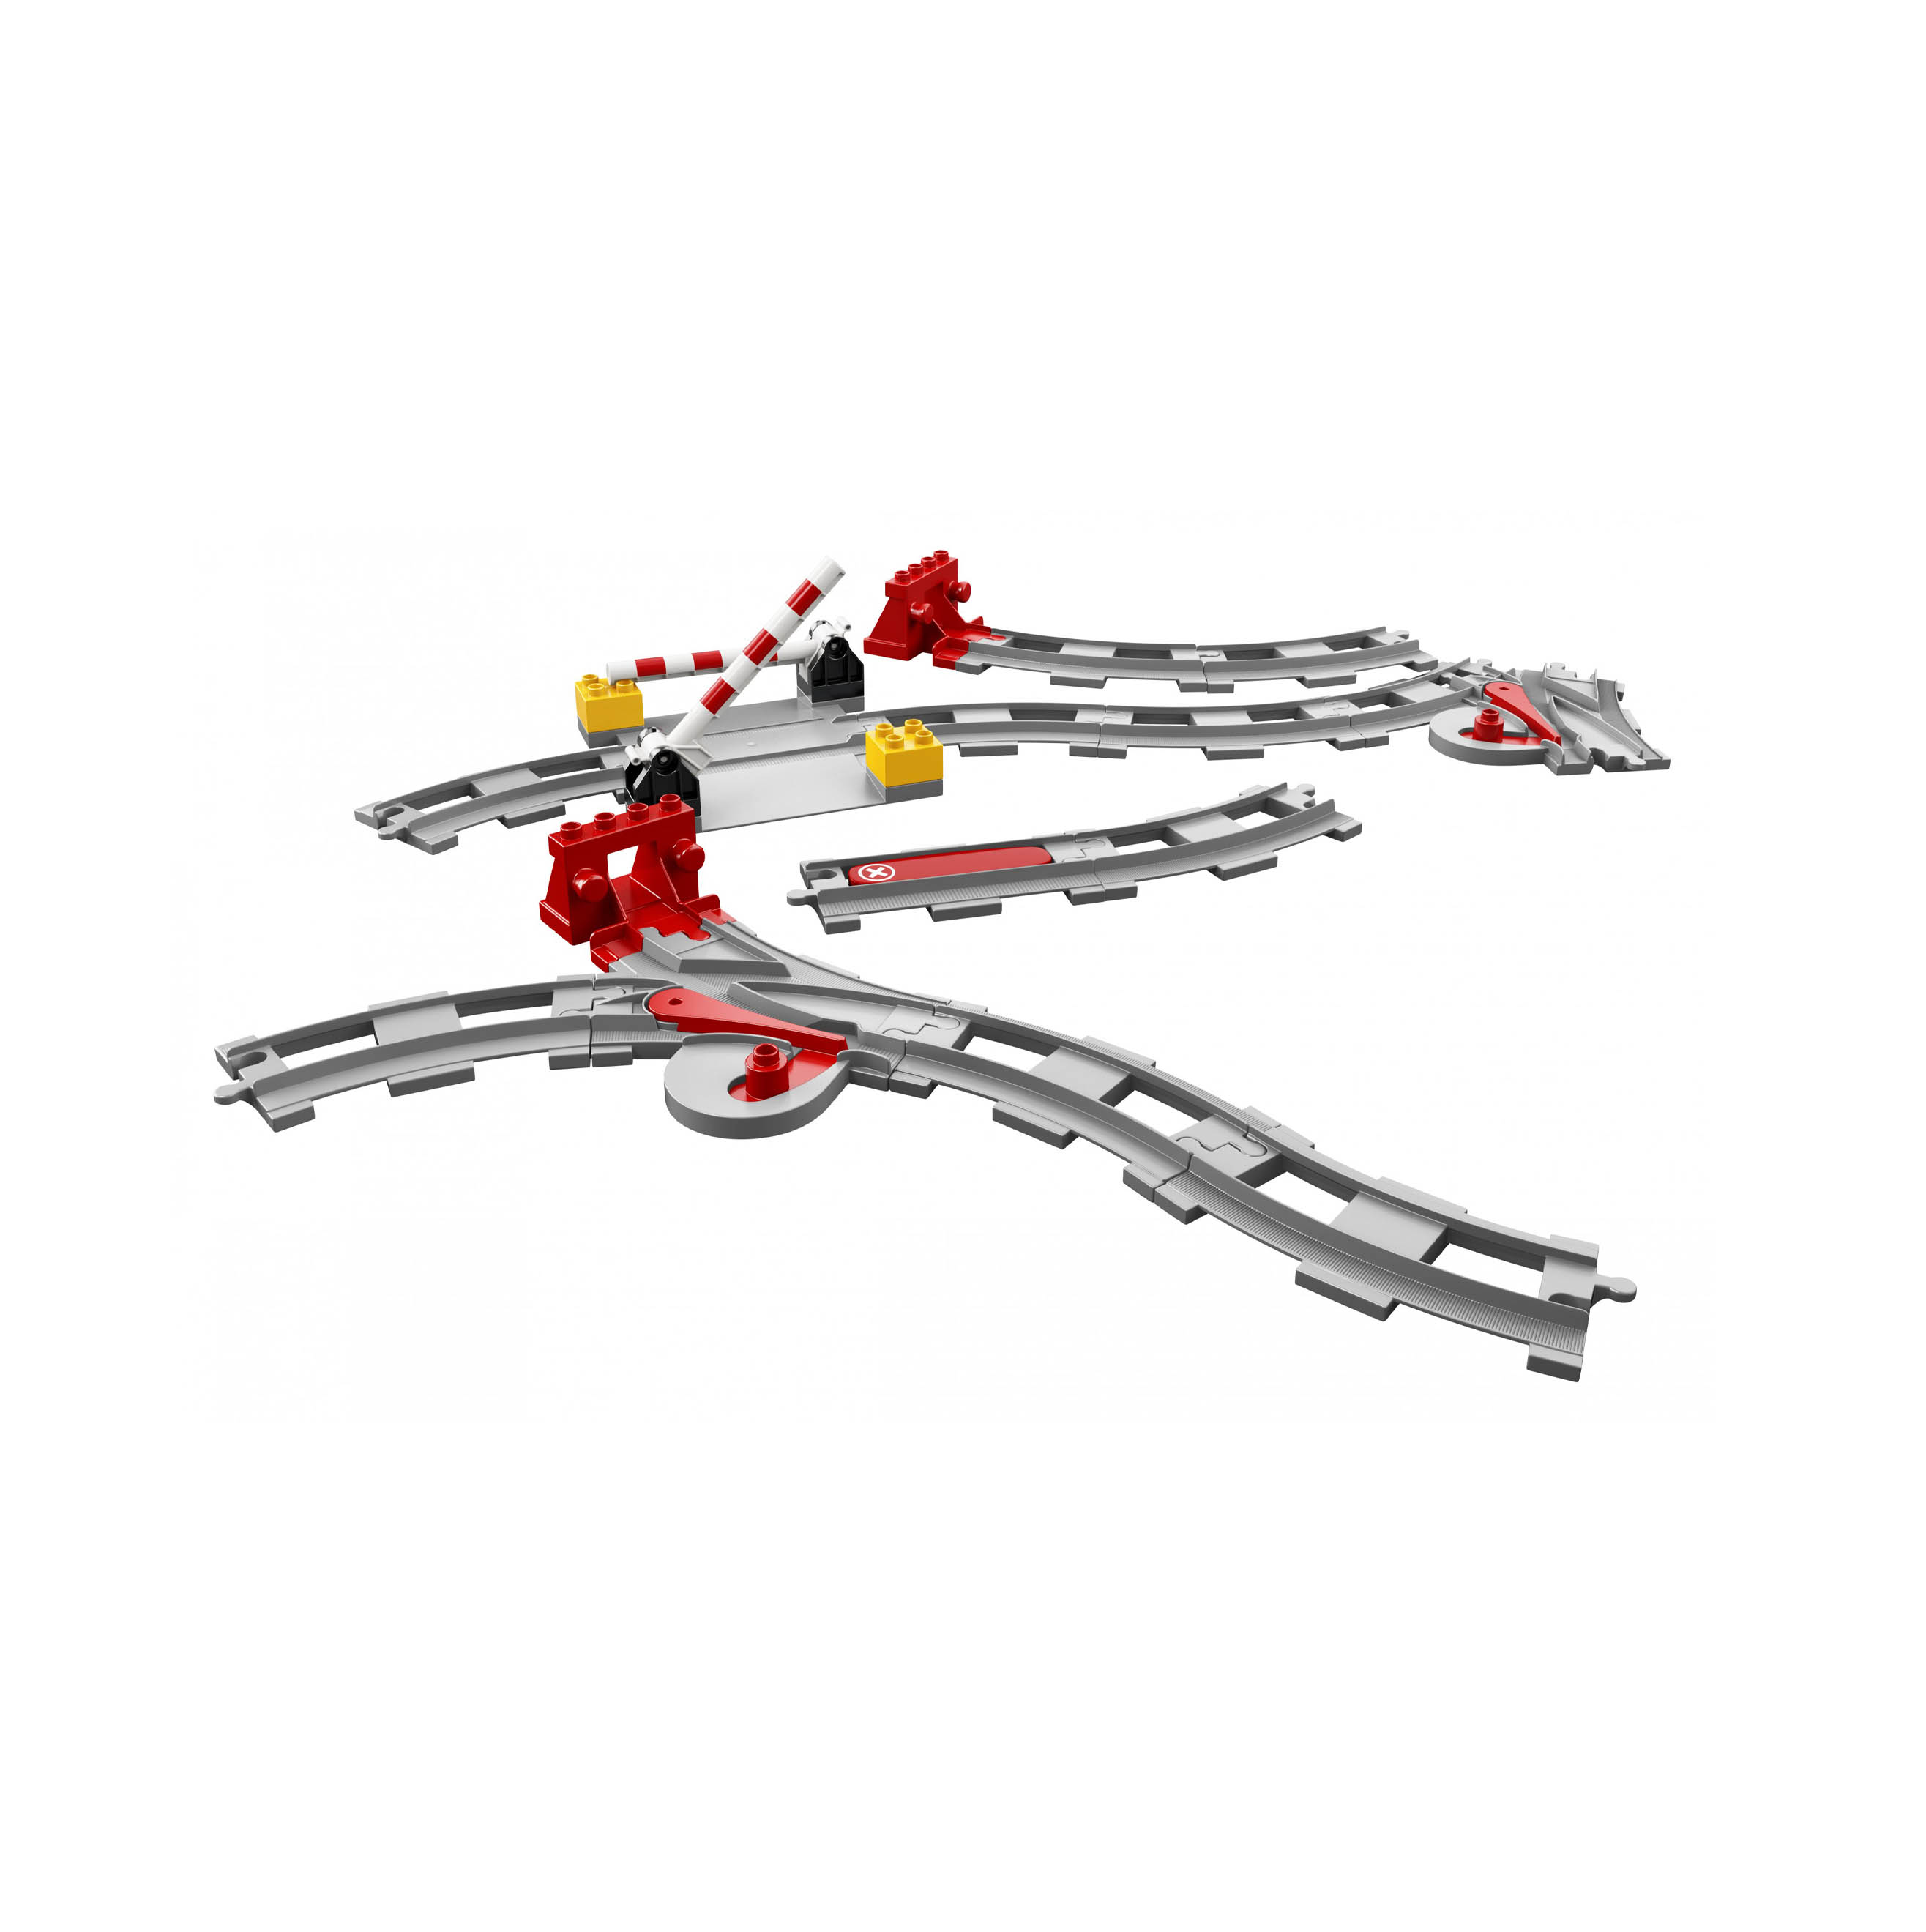 LEGO DUPLO Town Binari Ferroviari, Set di Costruzioni con Mattoncino Rosso d'Az 10882, , large